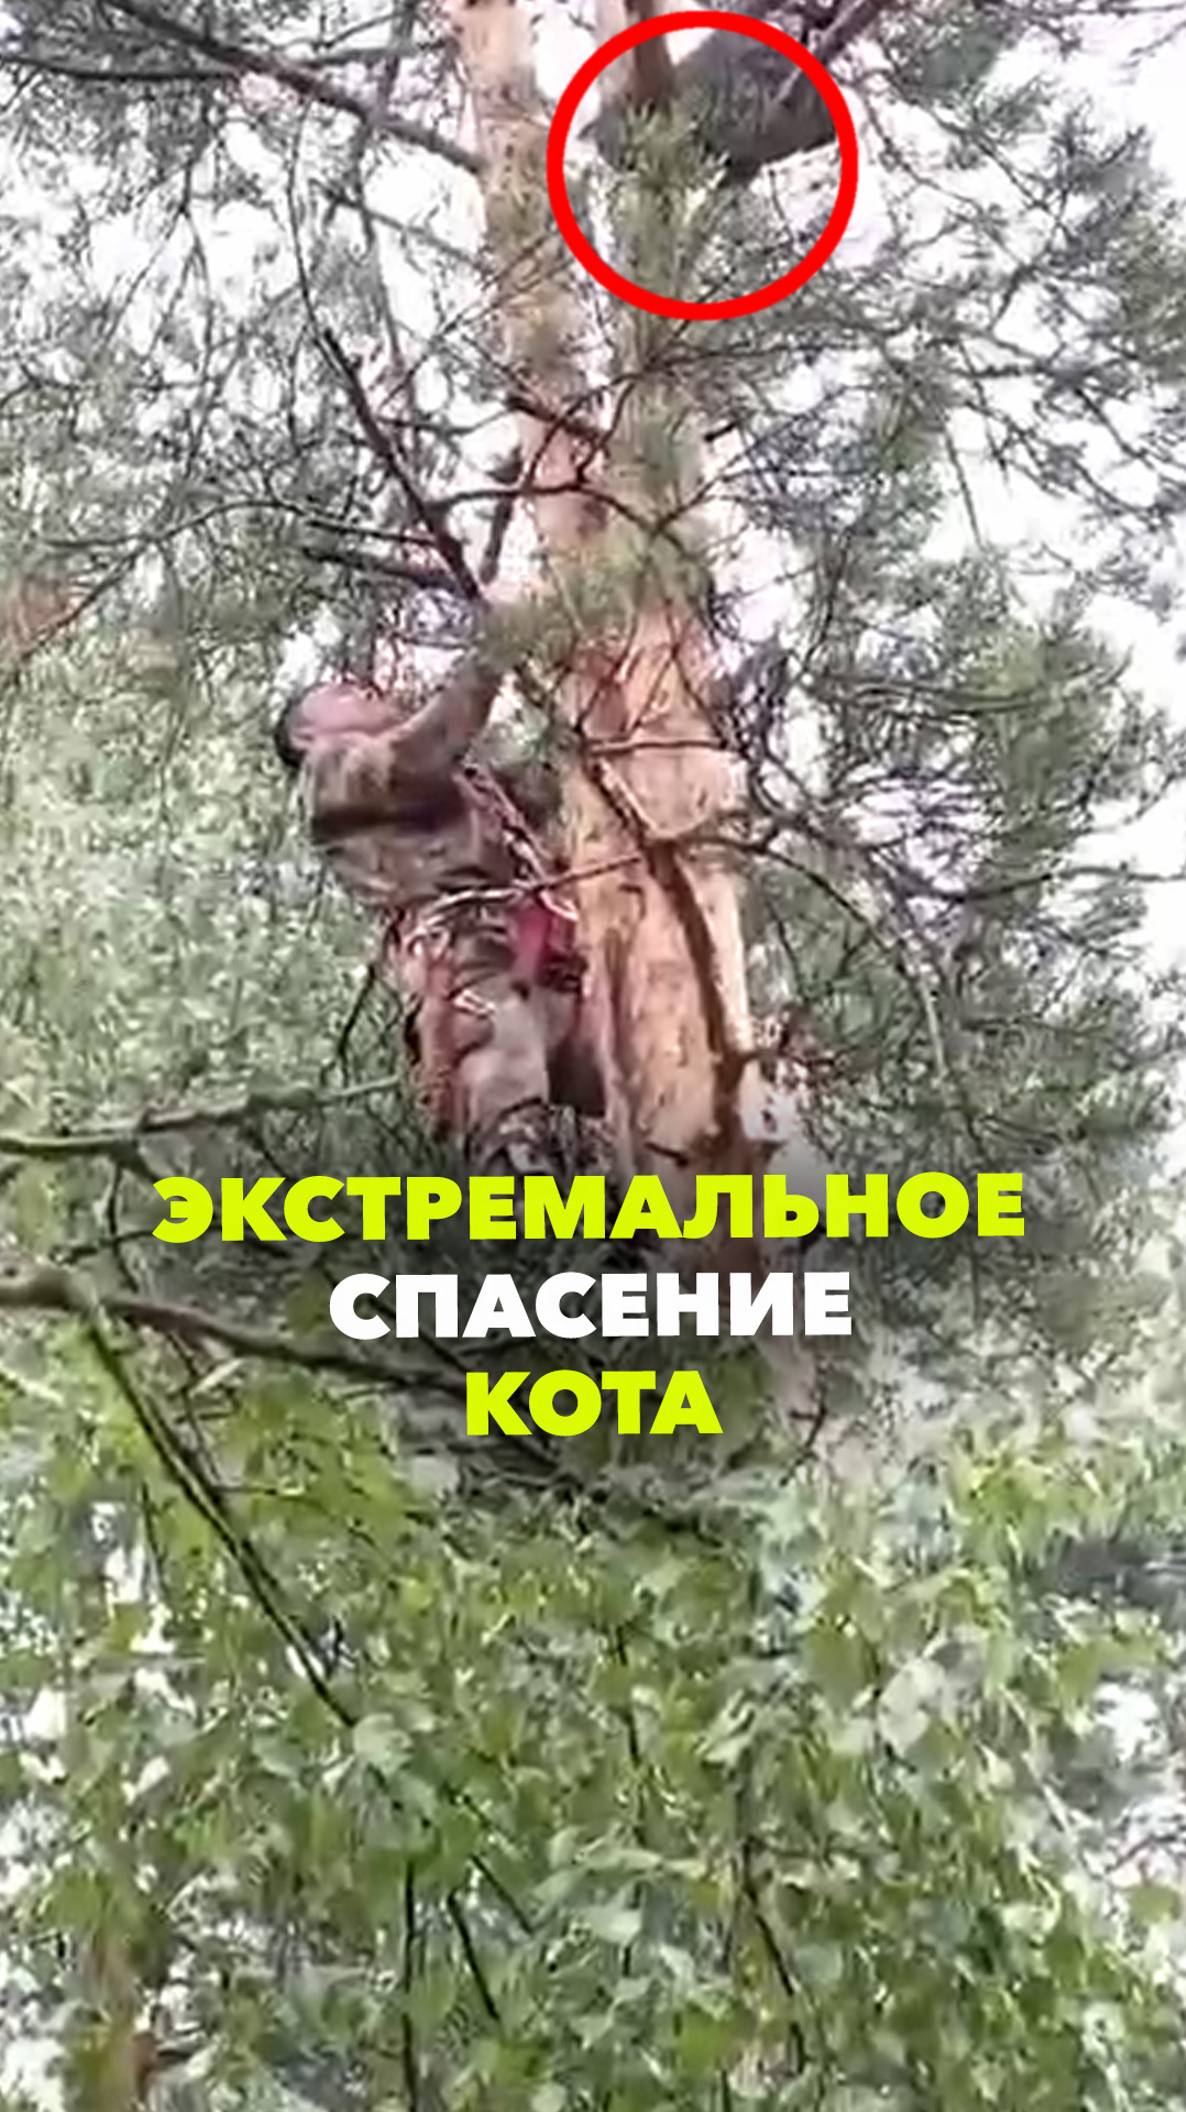 Спасение кота с высокого дерева - такого вы еще не видели!